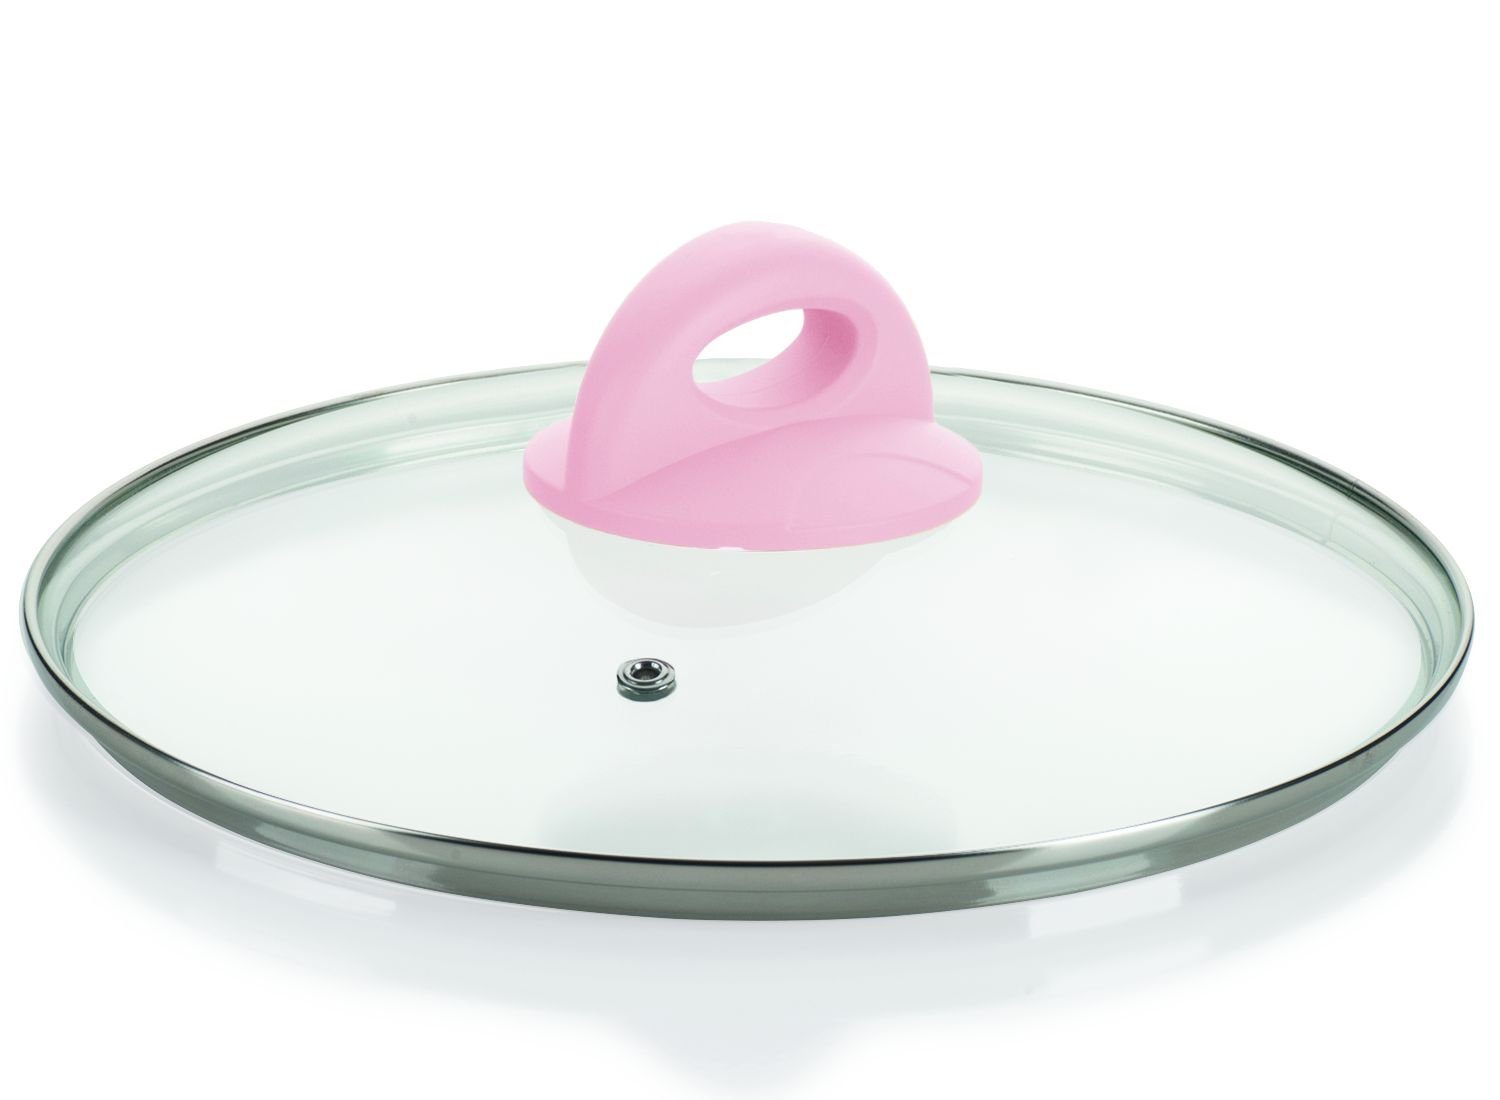 Genius Topfdeckel Genius - Cerafit Style Deckel Glasdeckel Ø 24cm Pink